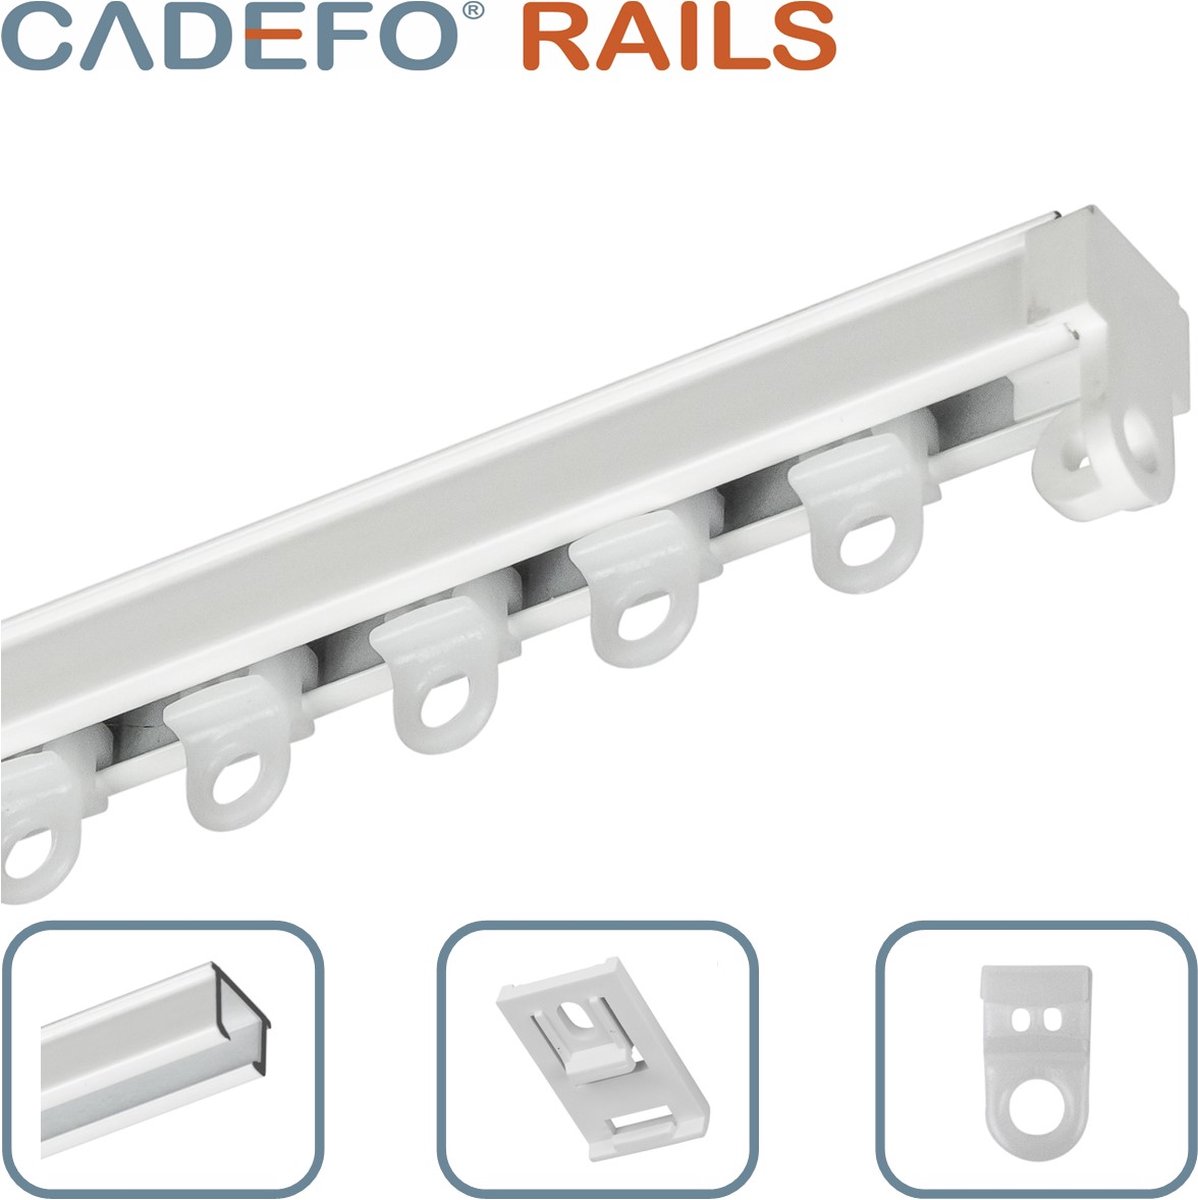 CADEFO RAILS (551 - 600 cm) Gordijnrails - Compleet op maat! - UIT 1 STUK - Leverbaar tot 6 meter - Plafondbevestiging - Lengte 595 cm